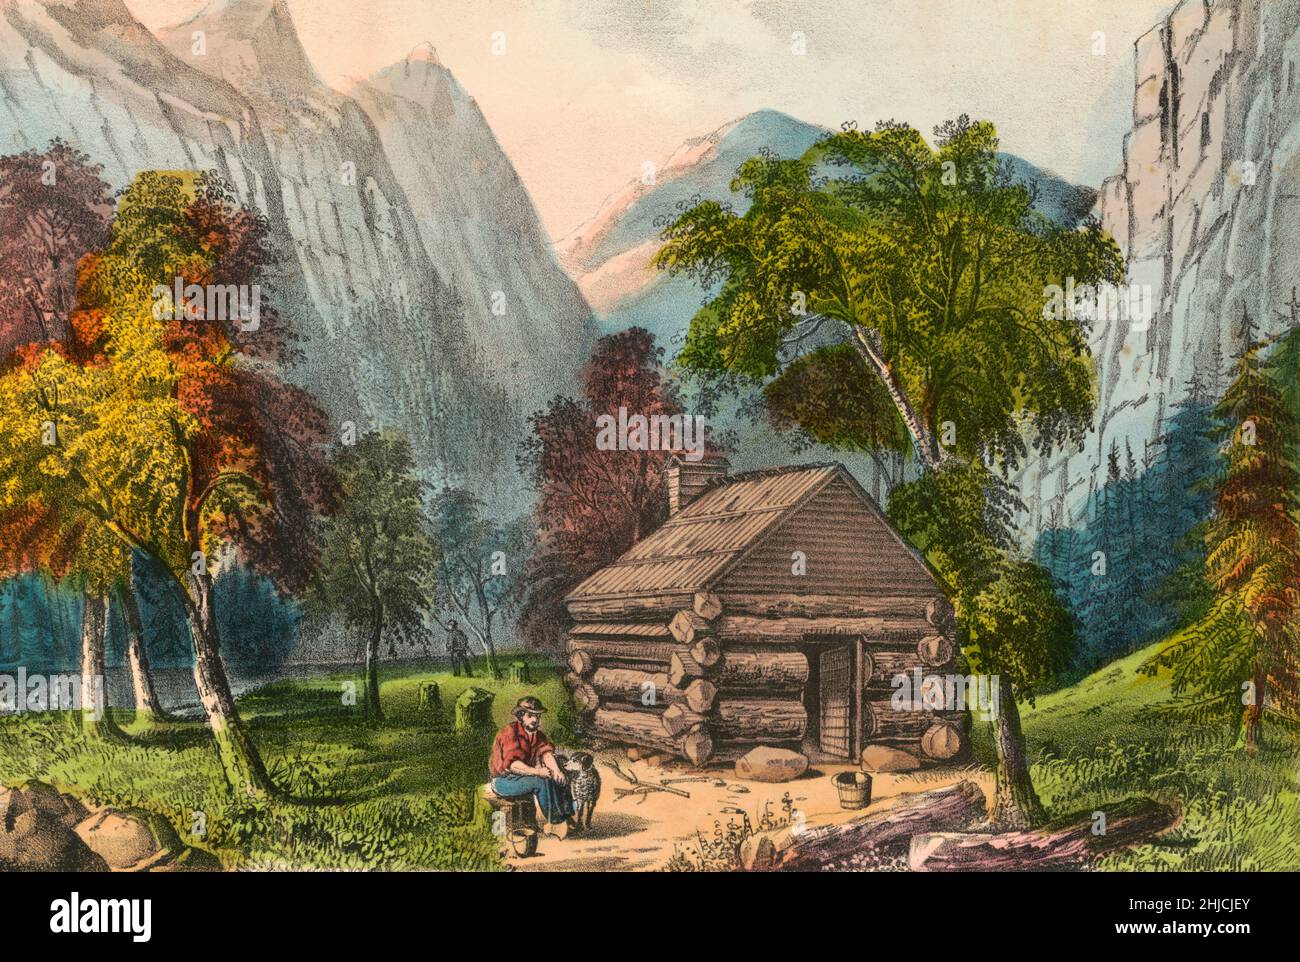 Pioneer Cabin, Yosemite Valley.Lithographie de couleur main, Currier & Ives, publiée vers 1856-1907. Banque D'Images